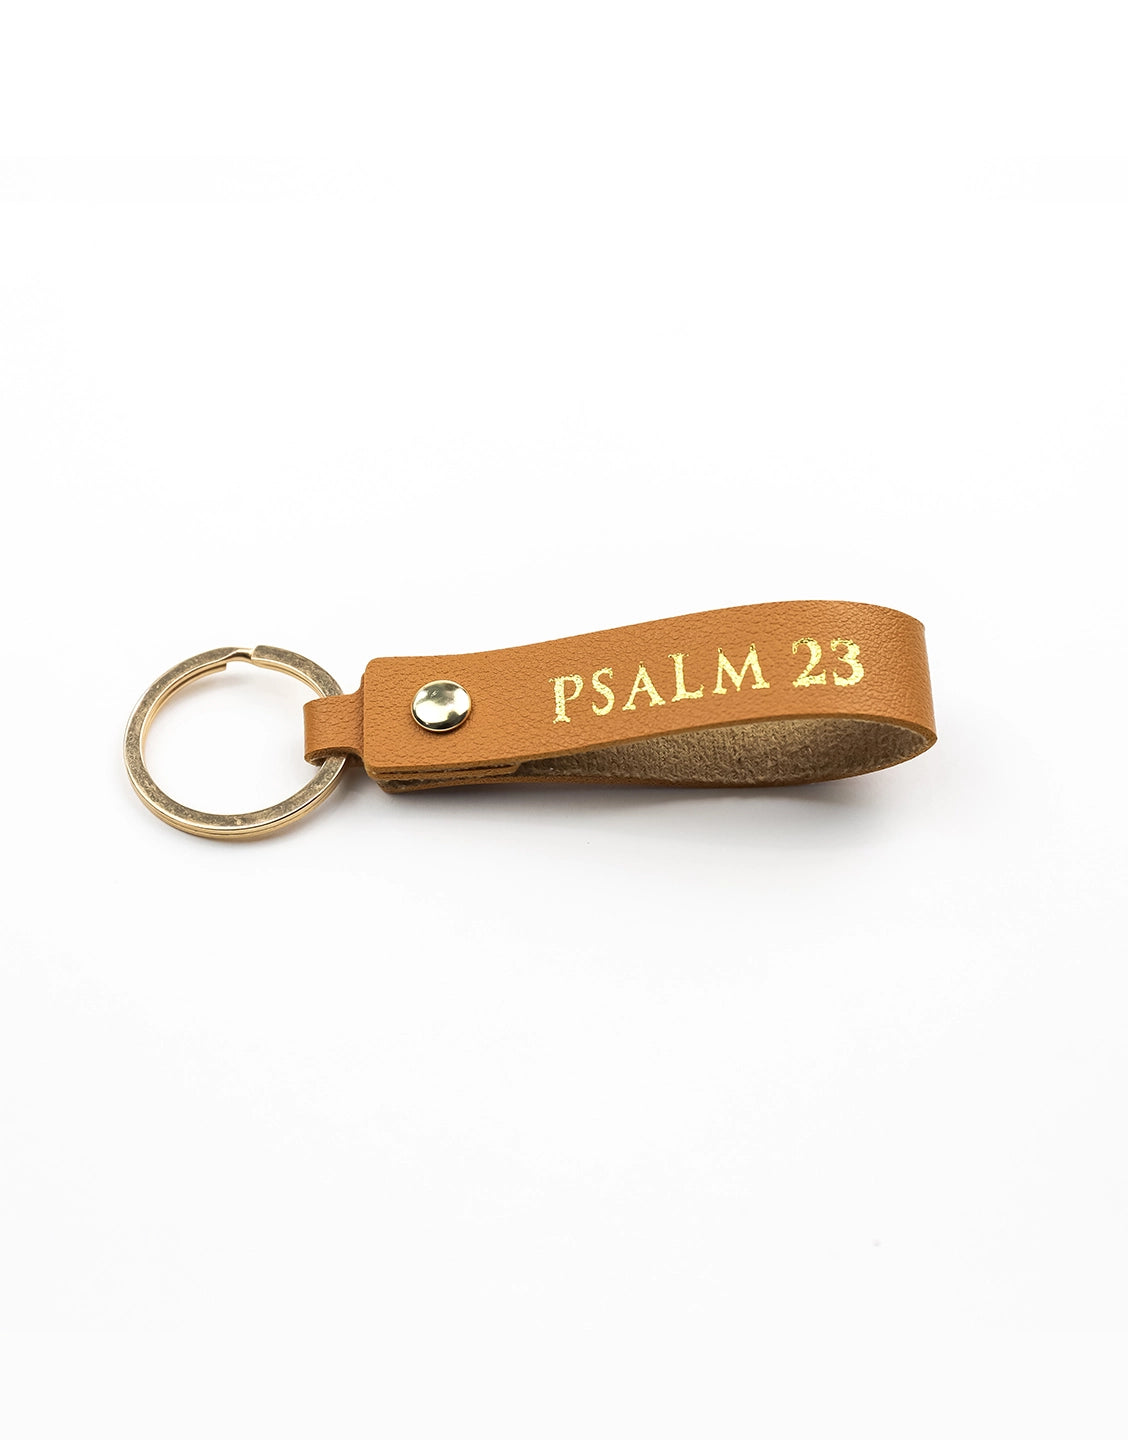 Psalm 23 Leather Keychain